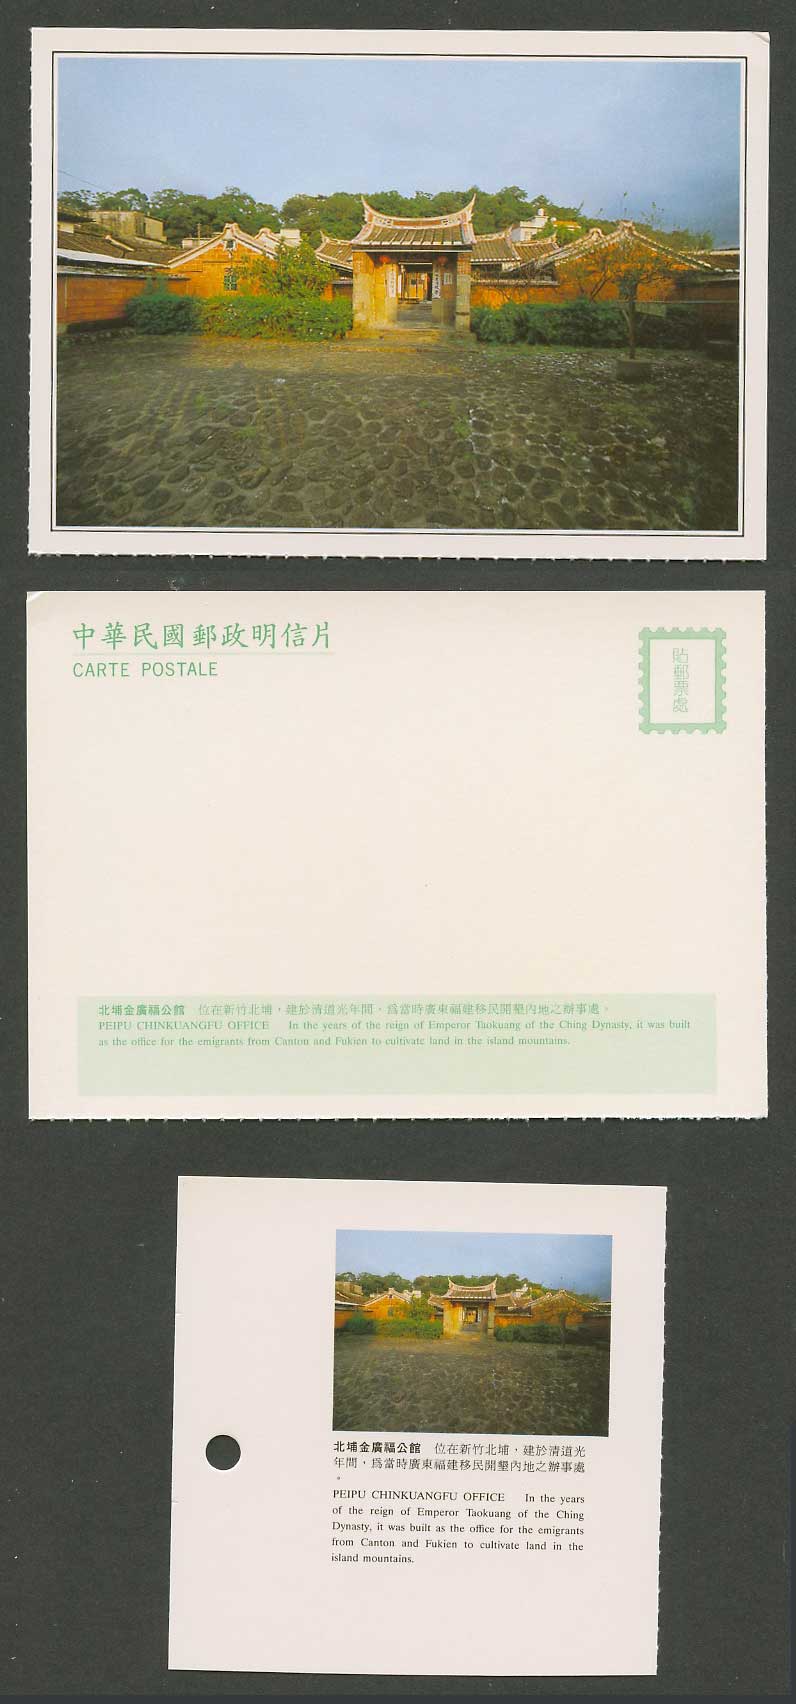 Taiwan Formosa China Postcard Peipu Chinkuangfu Office Hsinchu 北埔金廣福公館 新竹北埔 福建移民